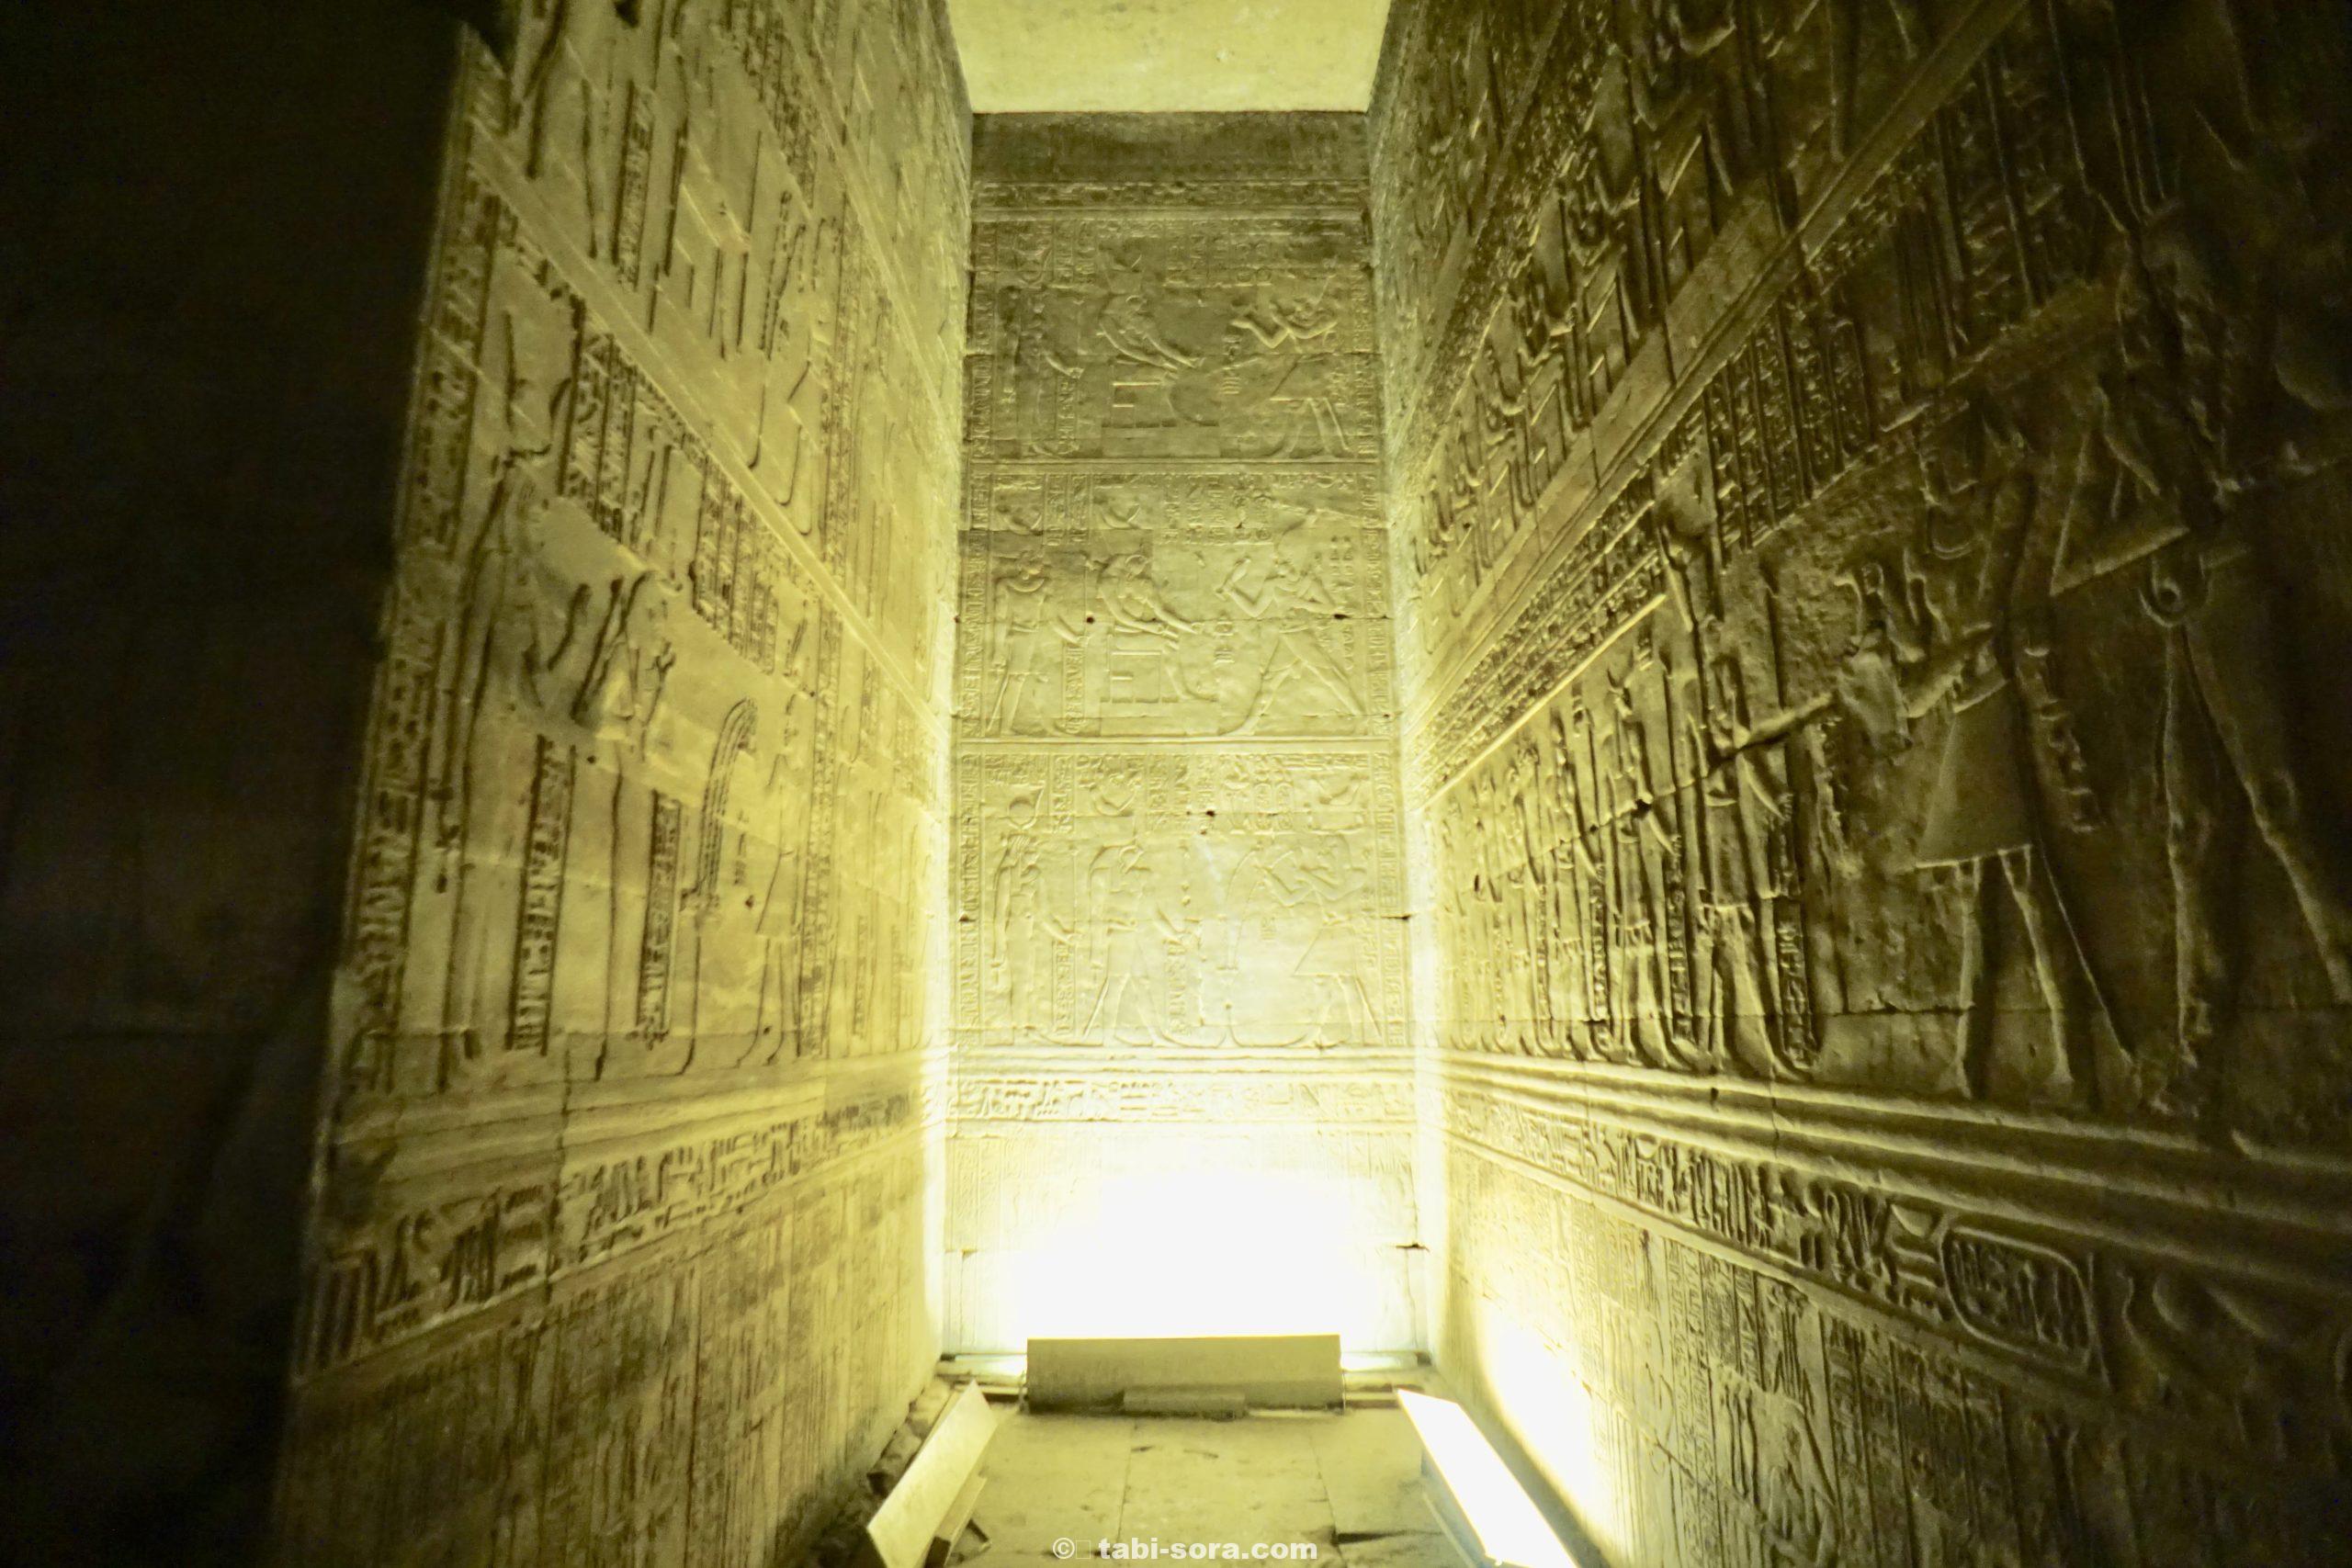 写真で巡るエジプト世界遺産の旅 ナイル川クルーズで行くエドフ神殿 旅人ライフ森の相談所